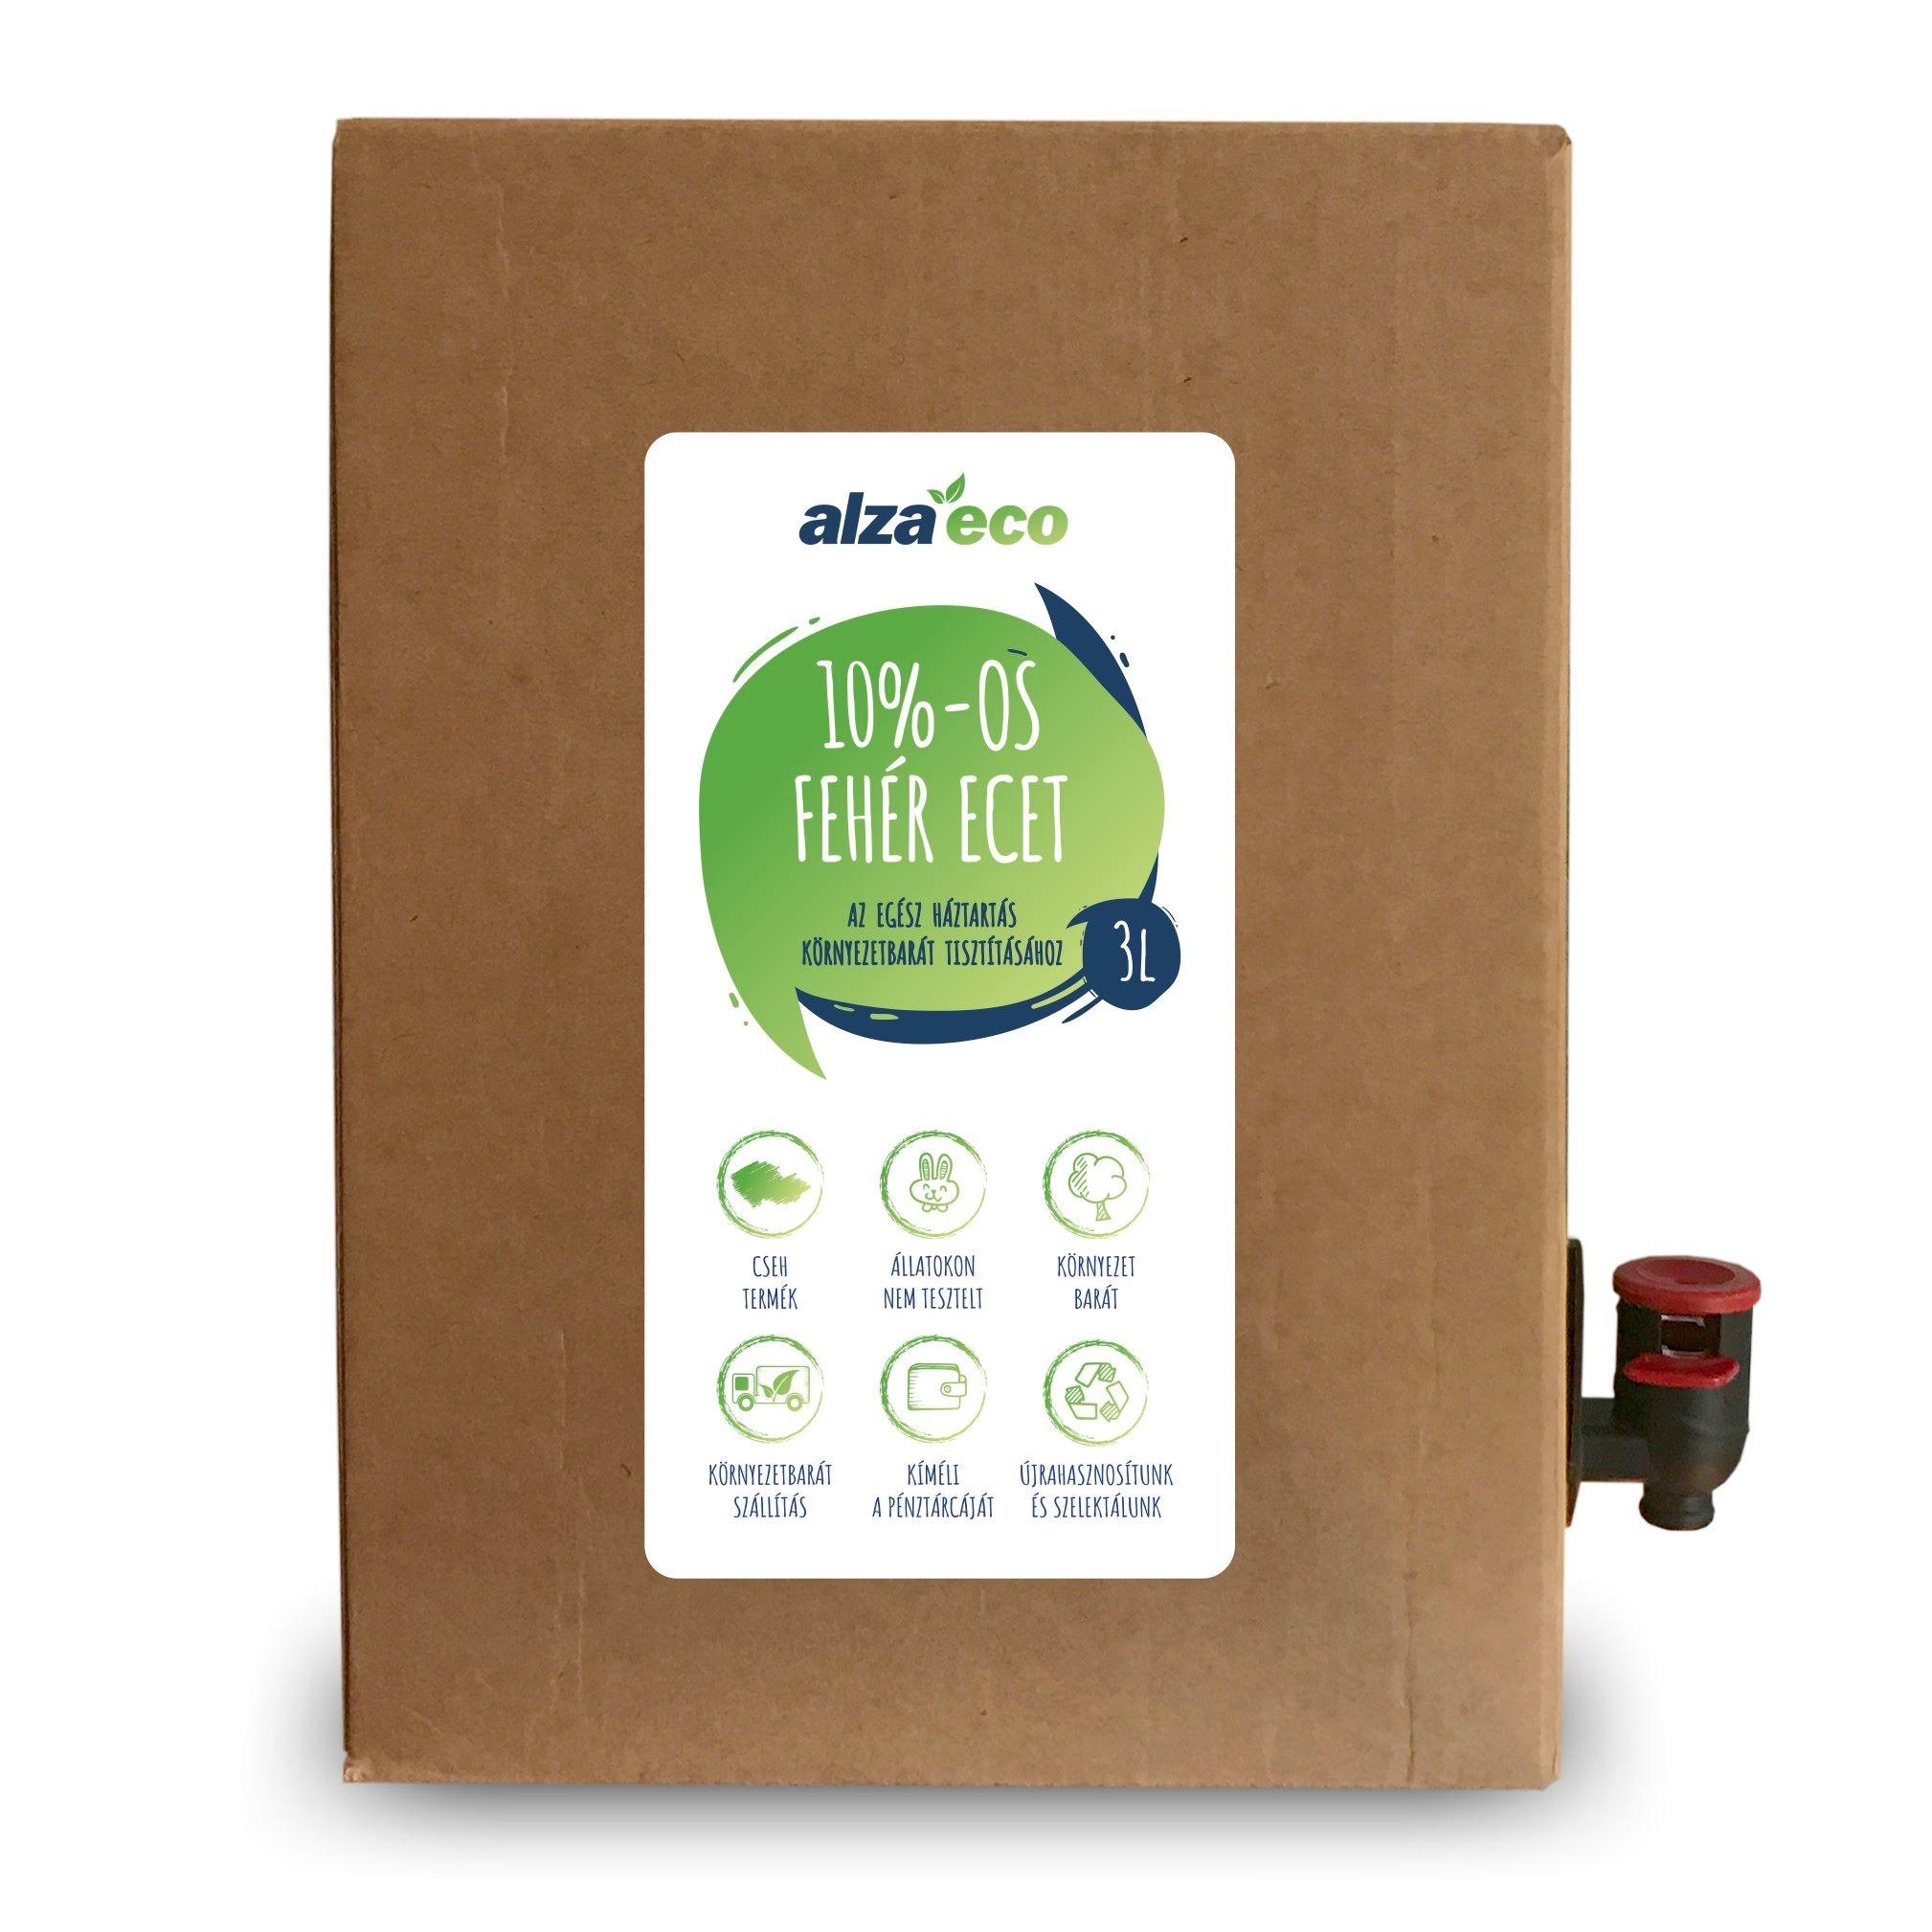 AlzaEco fehér ecet 10% 3 l környezetbarát tisztítószer